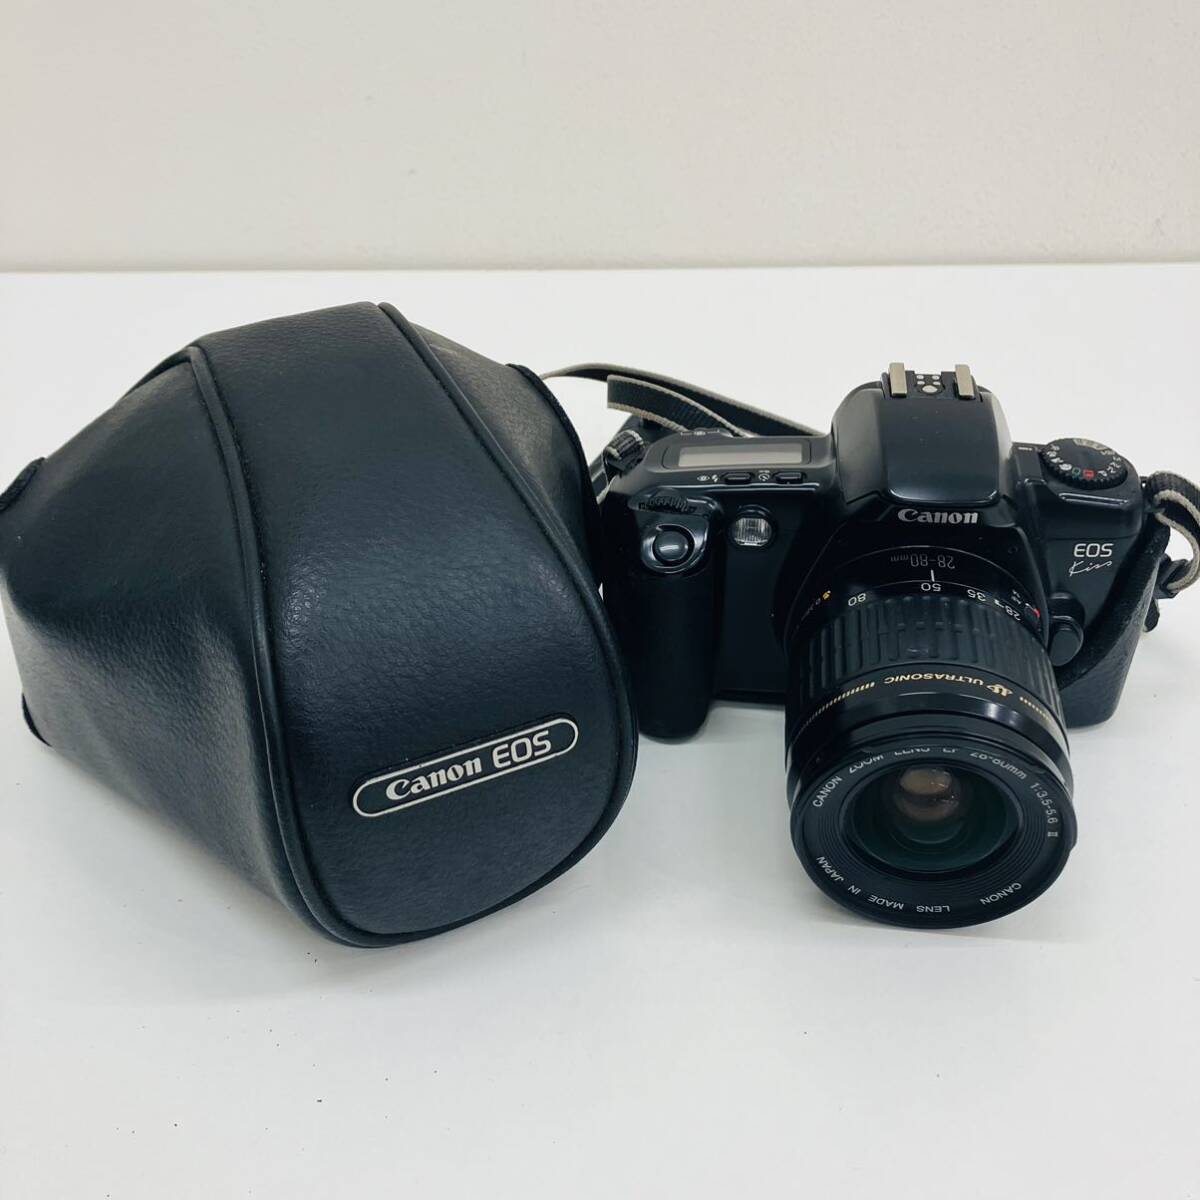 【 текущее состояние   продажа  товар 】 Canon  Canon EOS  оптика    пленка  камера  1 однообъективнай зеркальный  LENS EF:28-80mm 1:3.5-5.6 Ⅱ ULTRASONIC